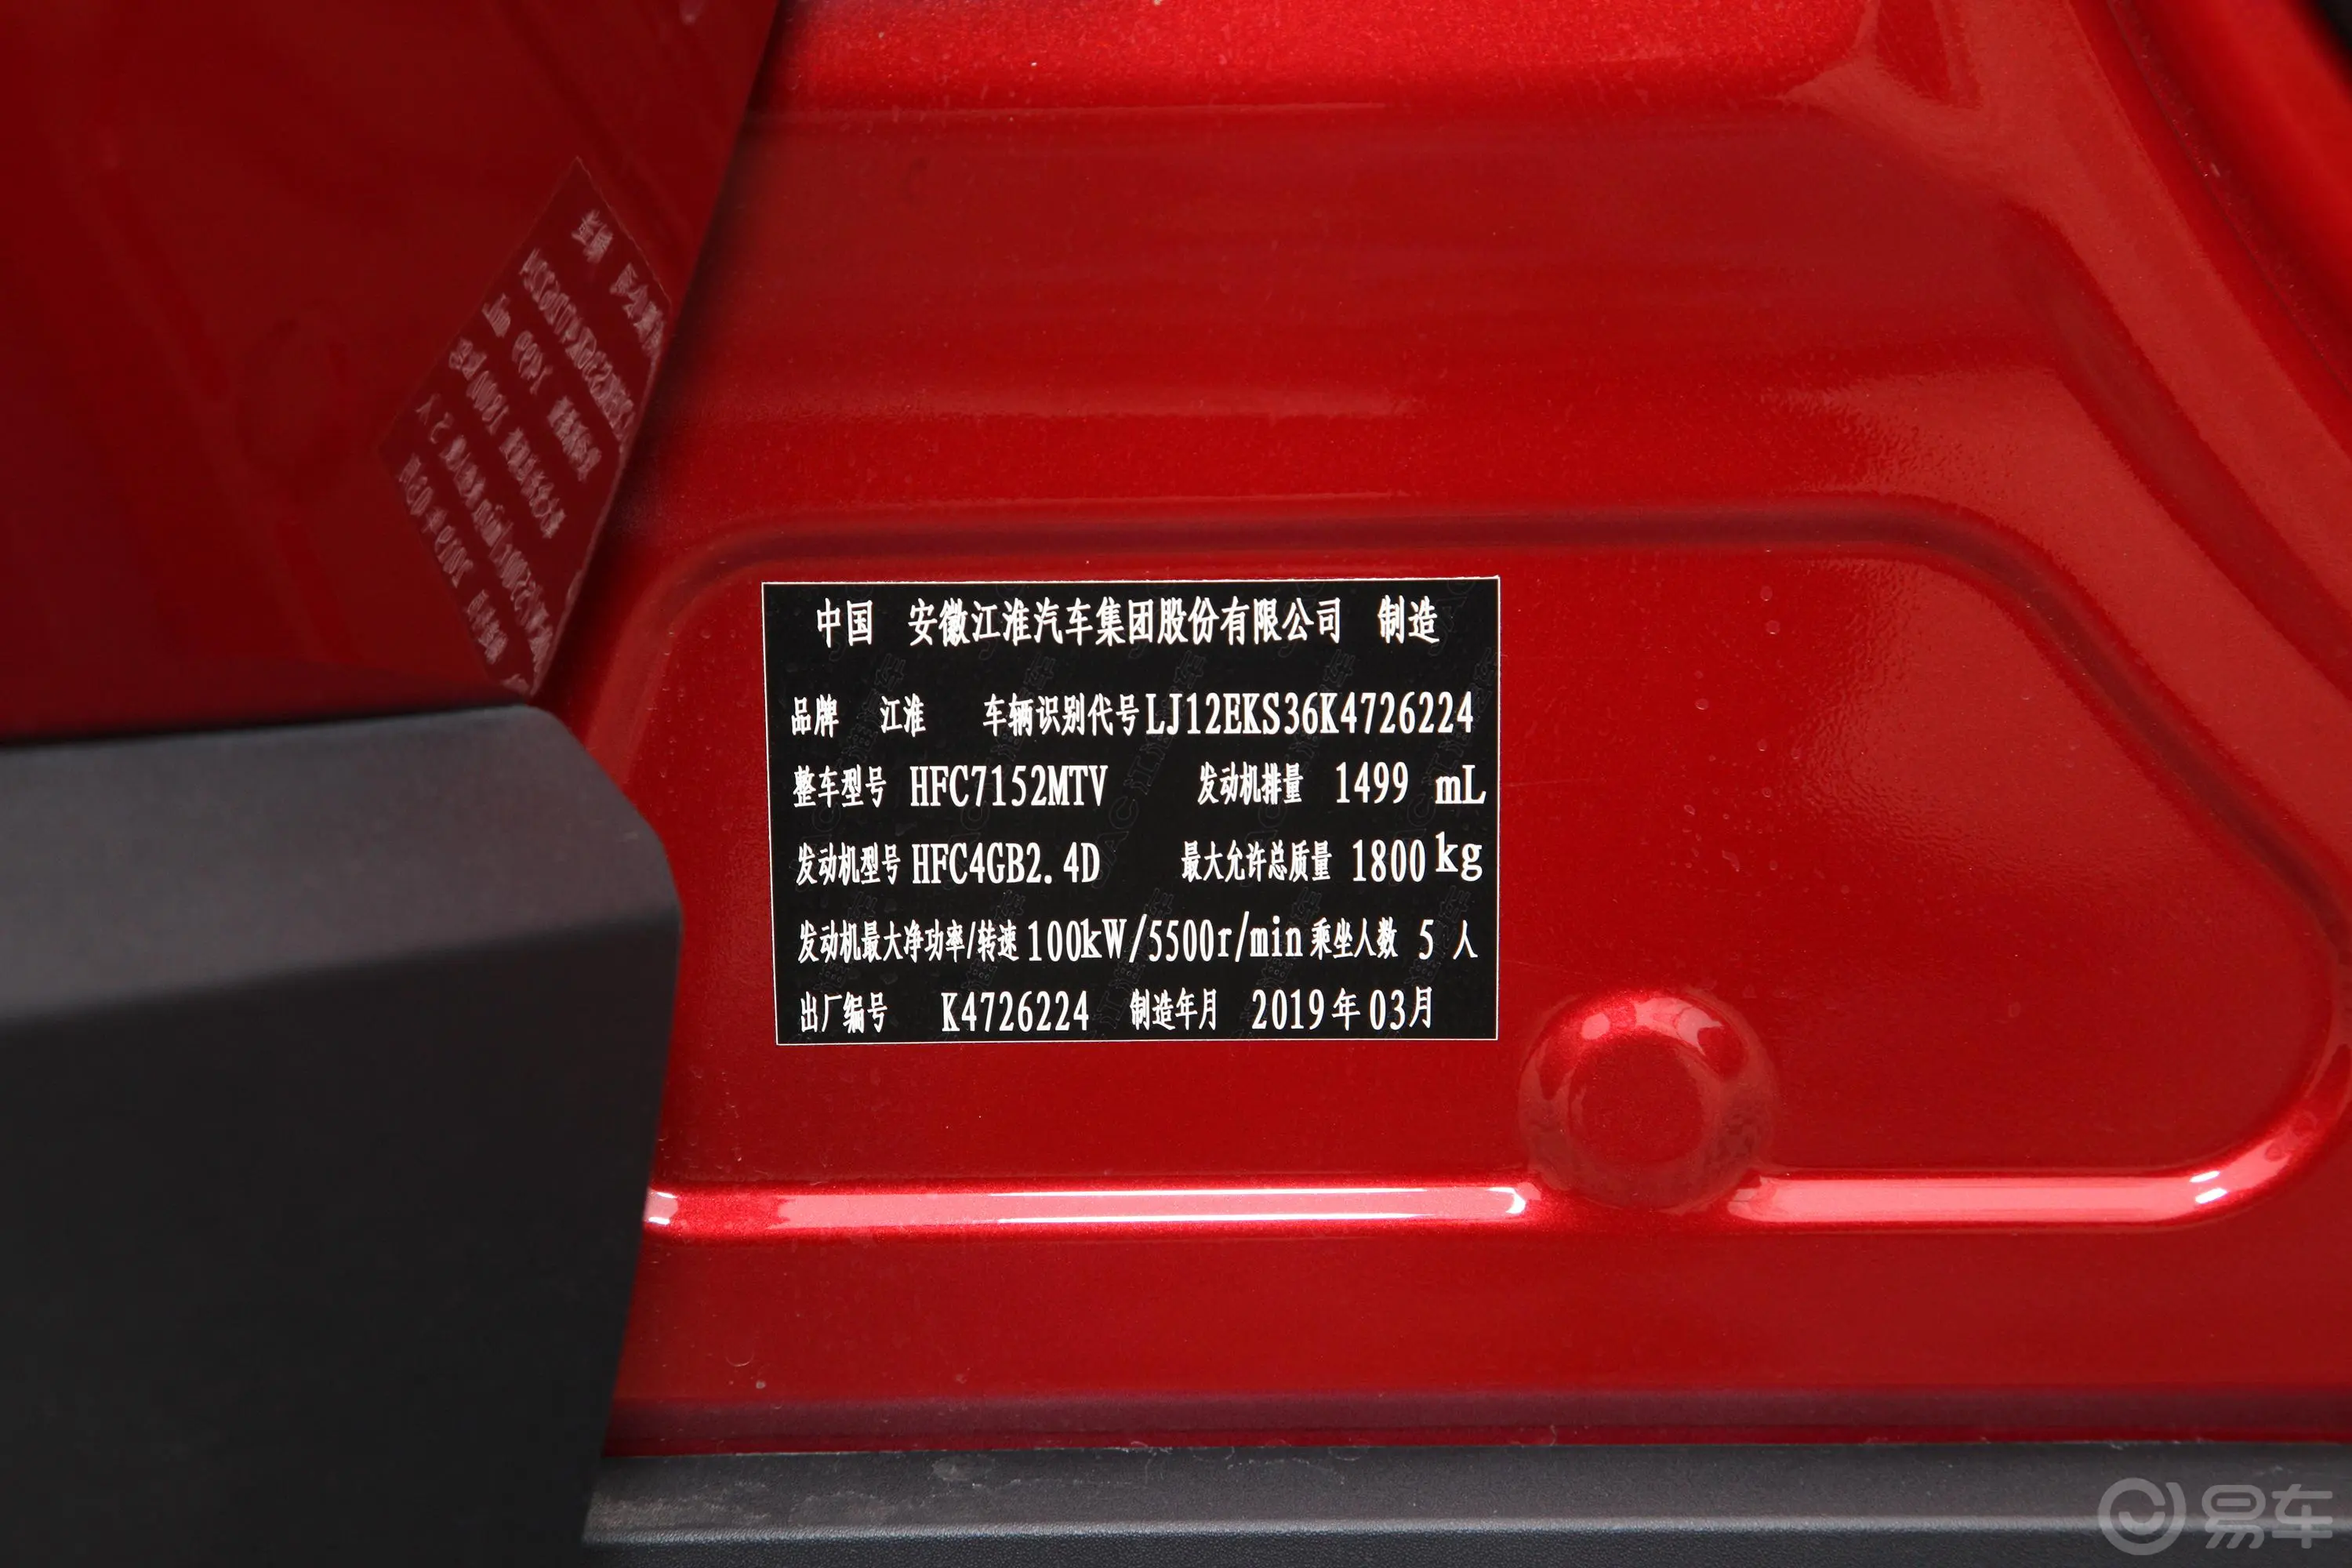 瑞风S41.5T CVT 梦想版车辆信息铭牌